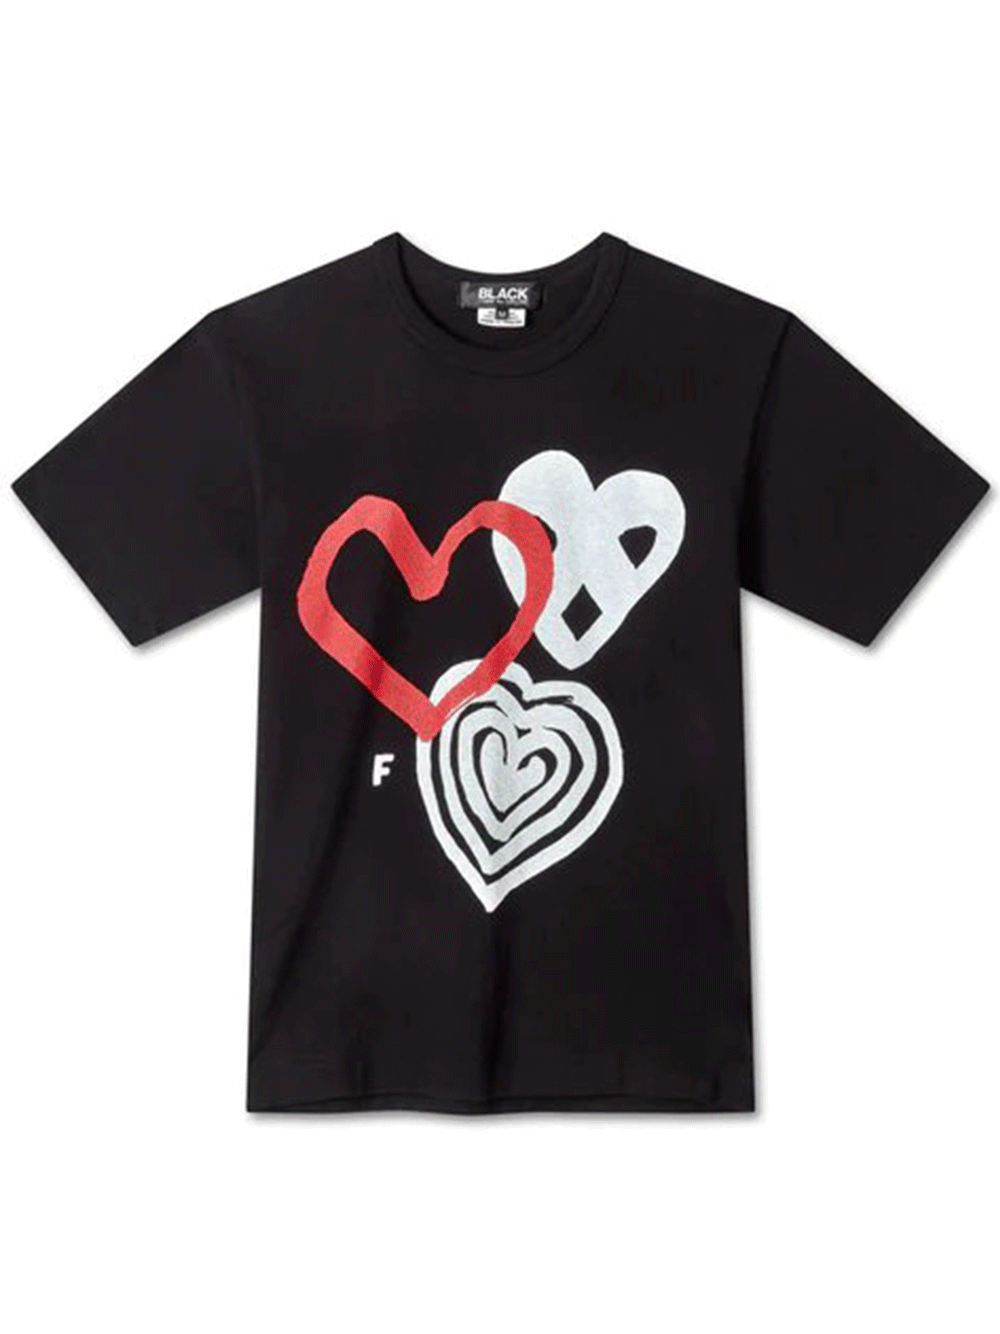 COMME-des-GARCONS-BLACK-Heart-Print-T-Shirt-Black_1